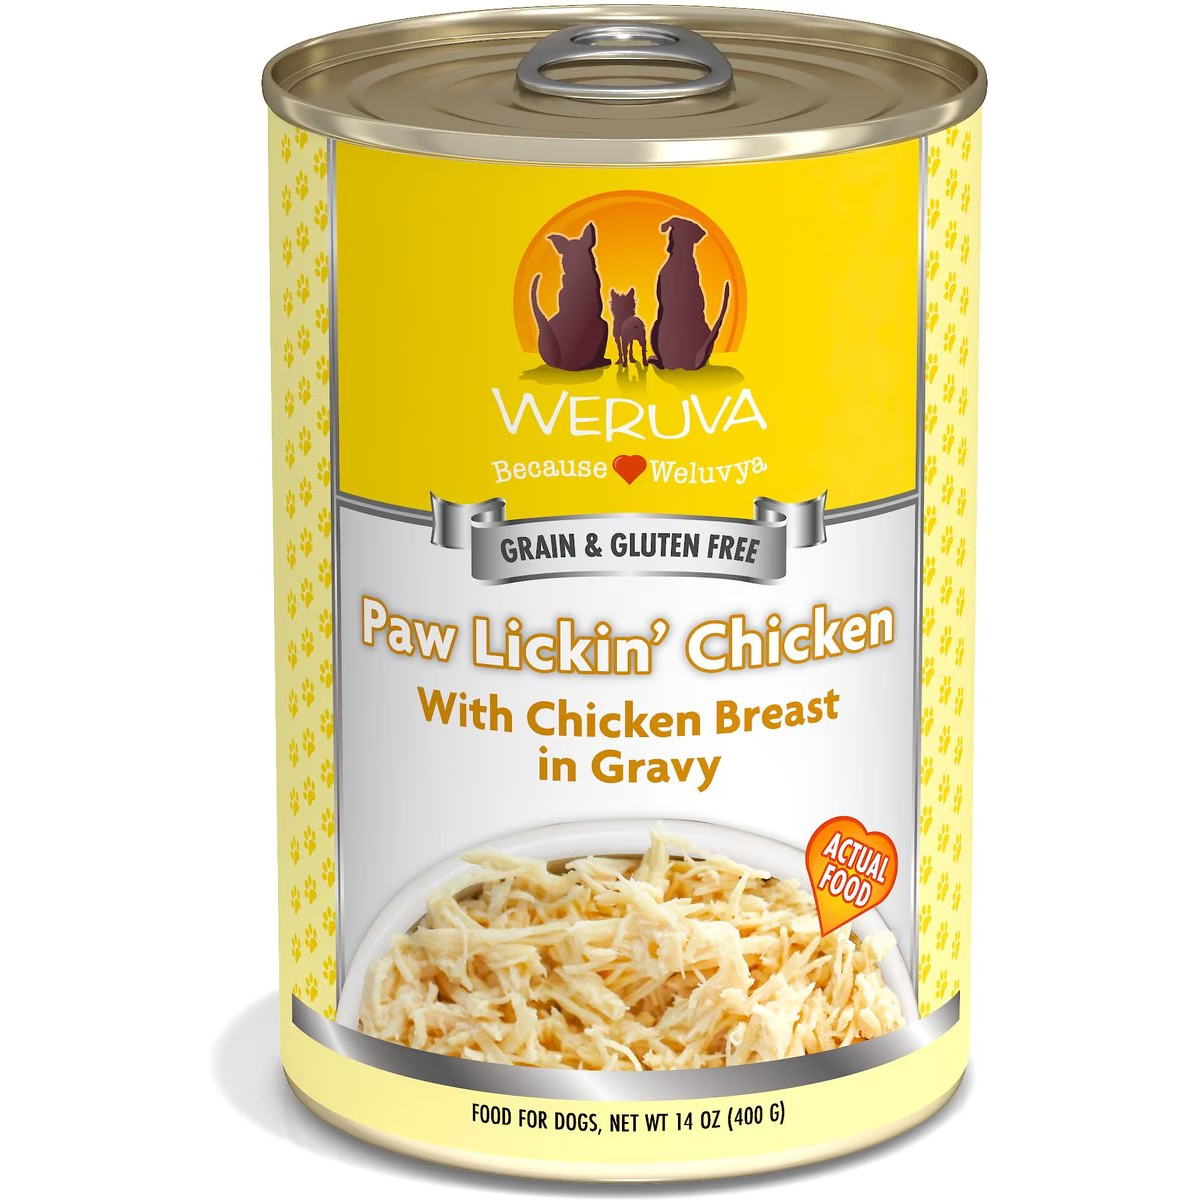 Weruva Paw Lickin’ Chicken Grain & Gluten Free Dog Food